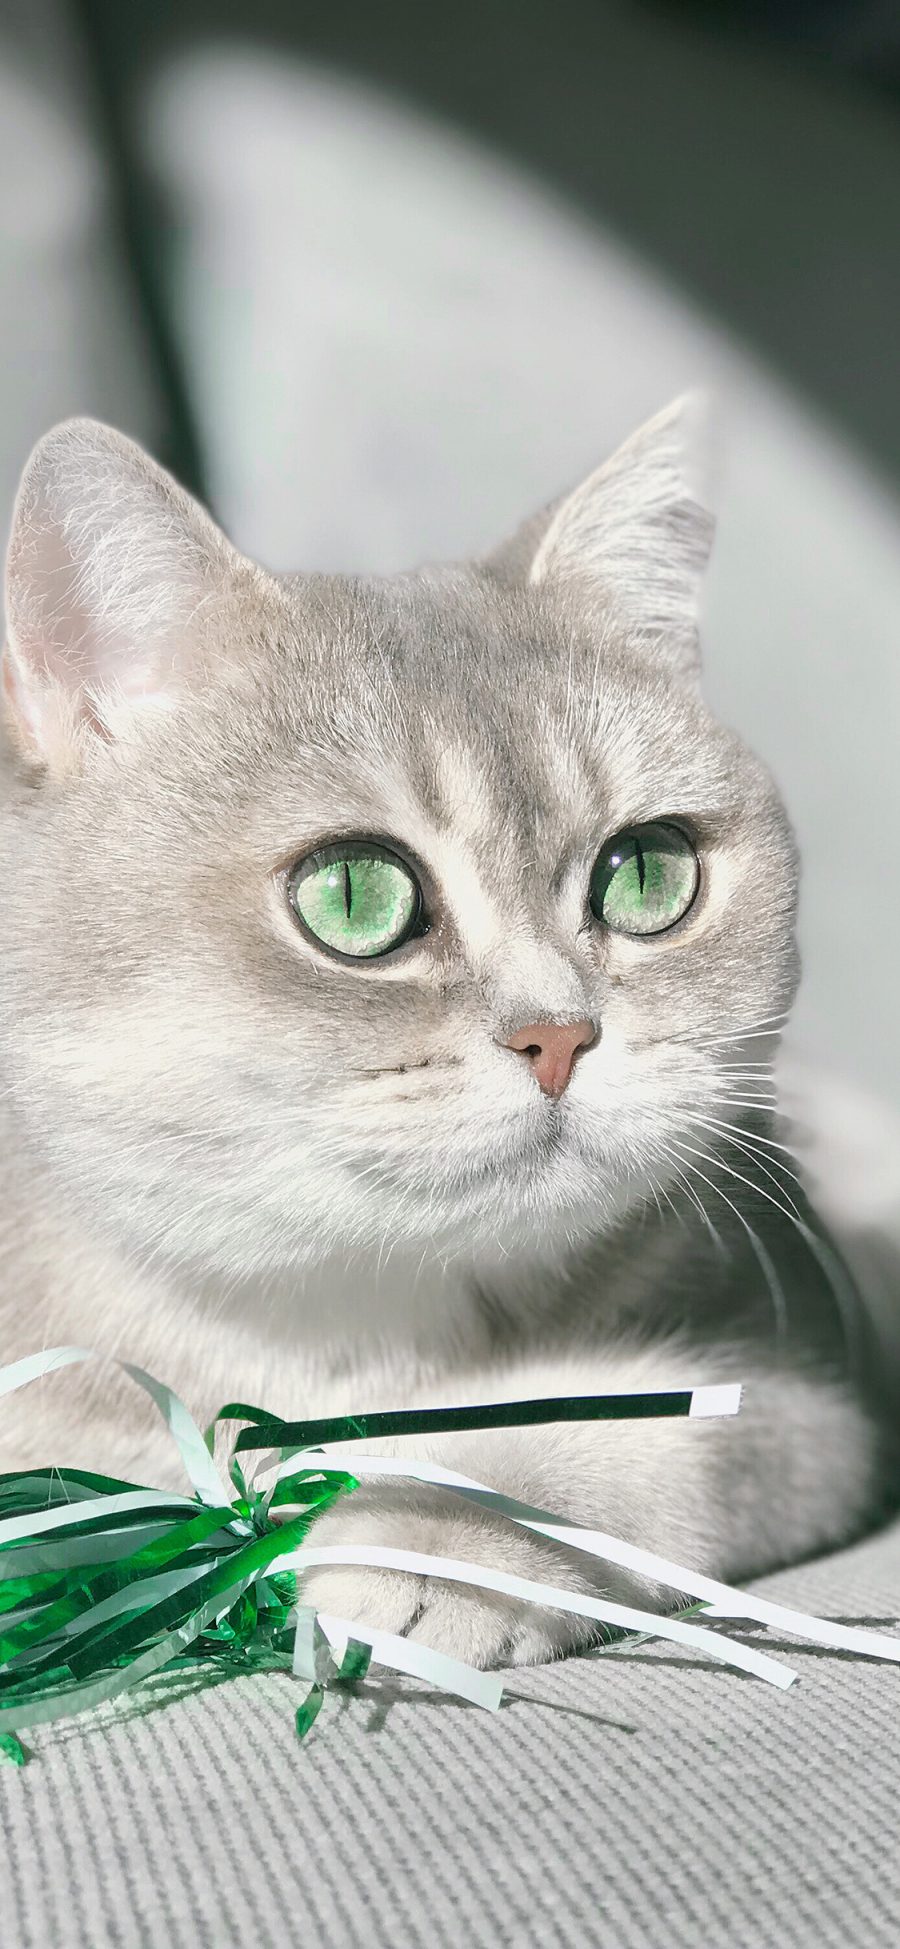 [2436×1125]猫咪 碧眼 灰白 宠物 苹果手机壁纸图片